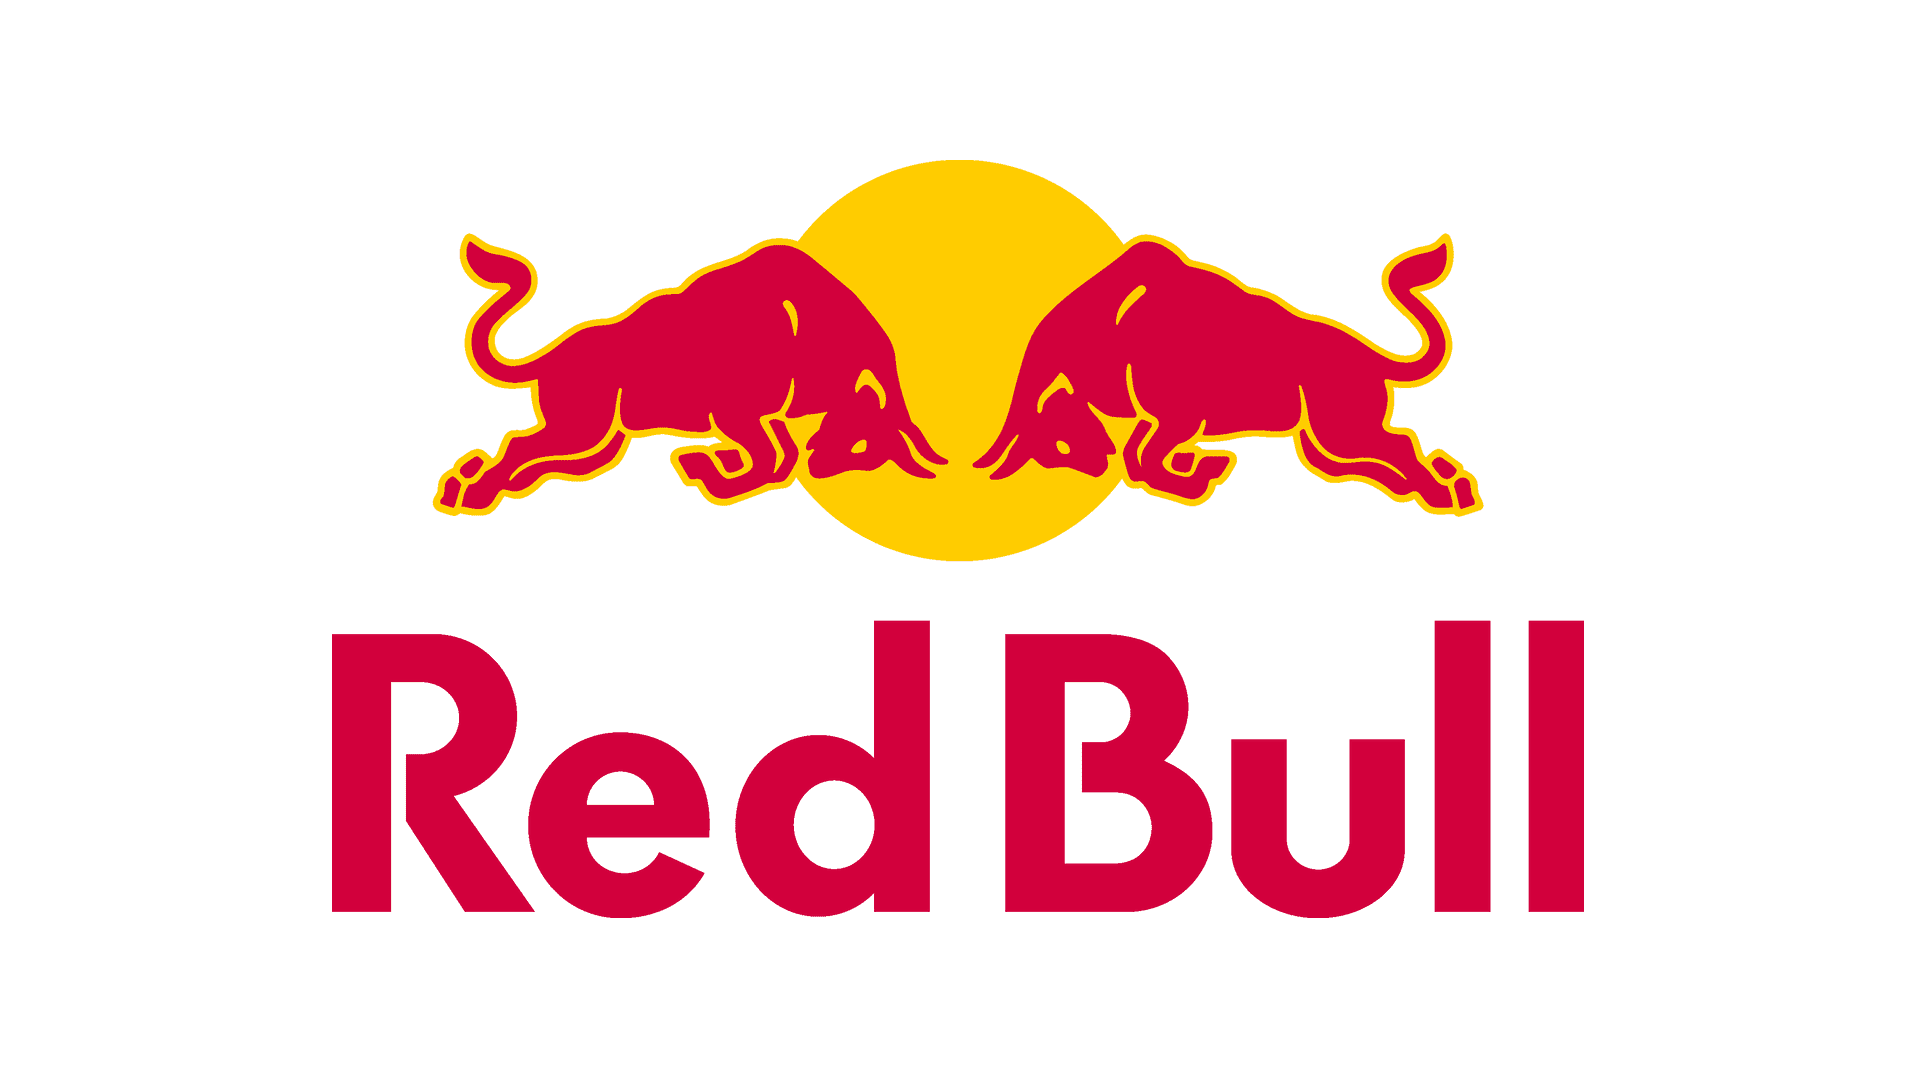 Official Sponsor , Red bull